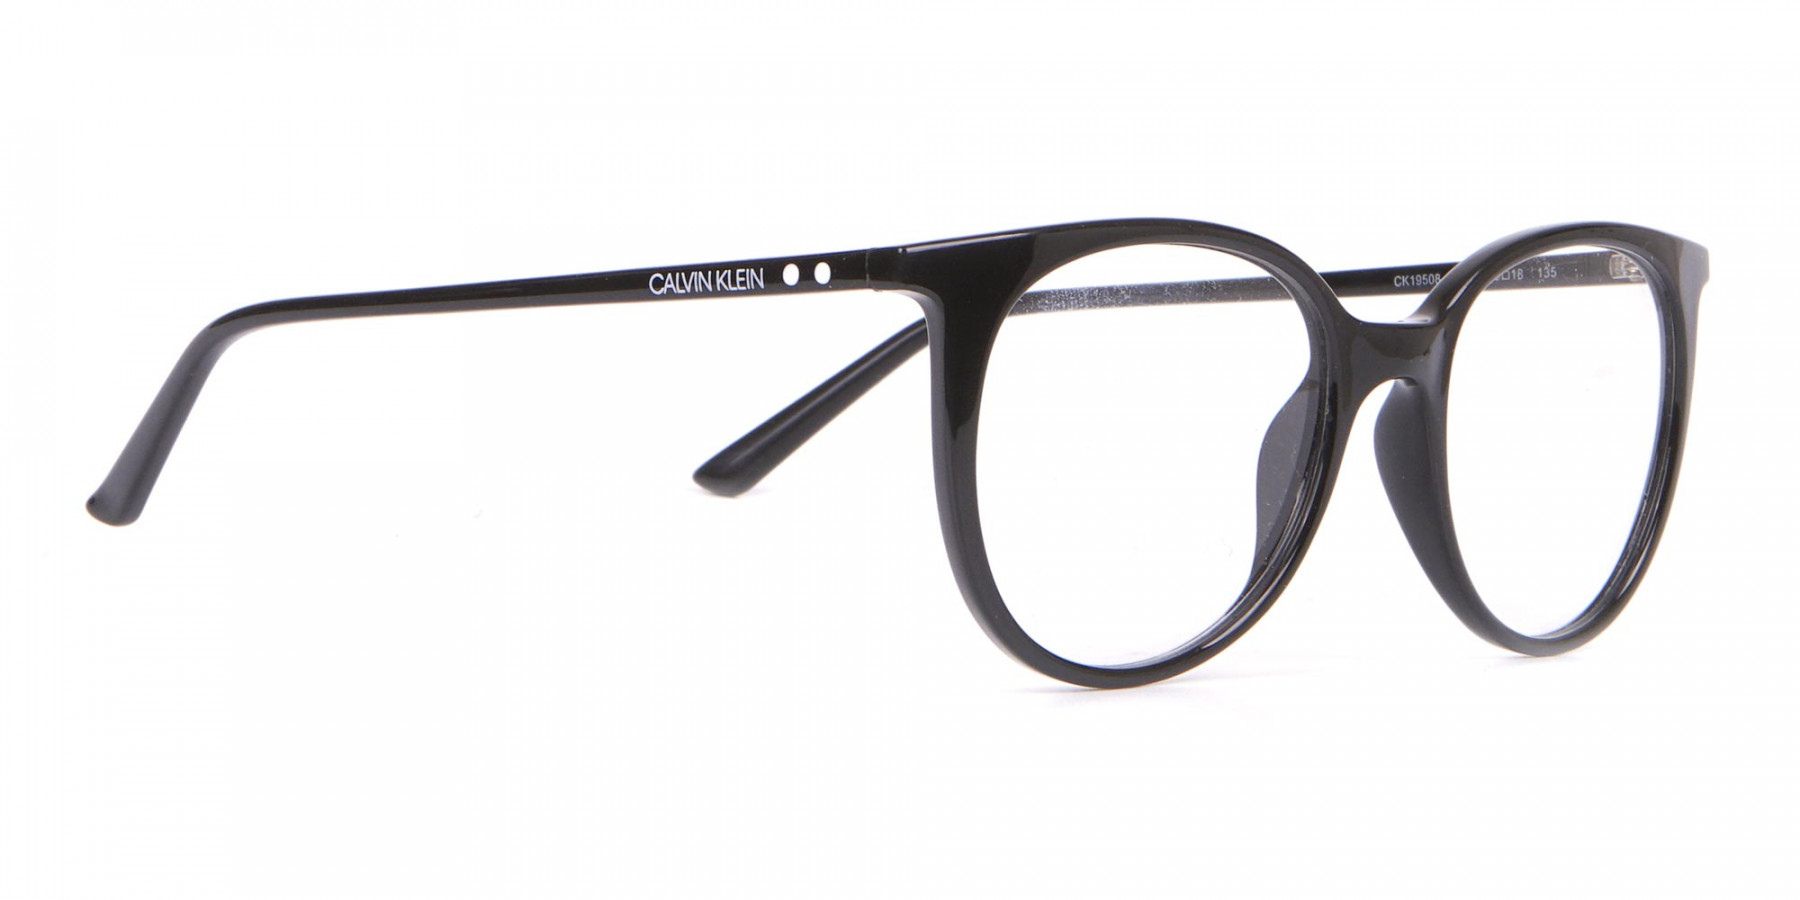 Calvin Klein CK19508 Unisex Black Classic Round Glasses-1